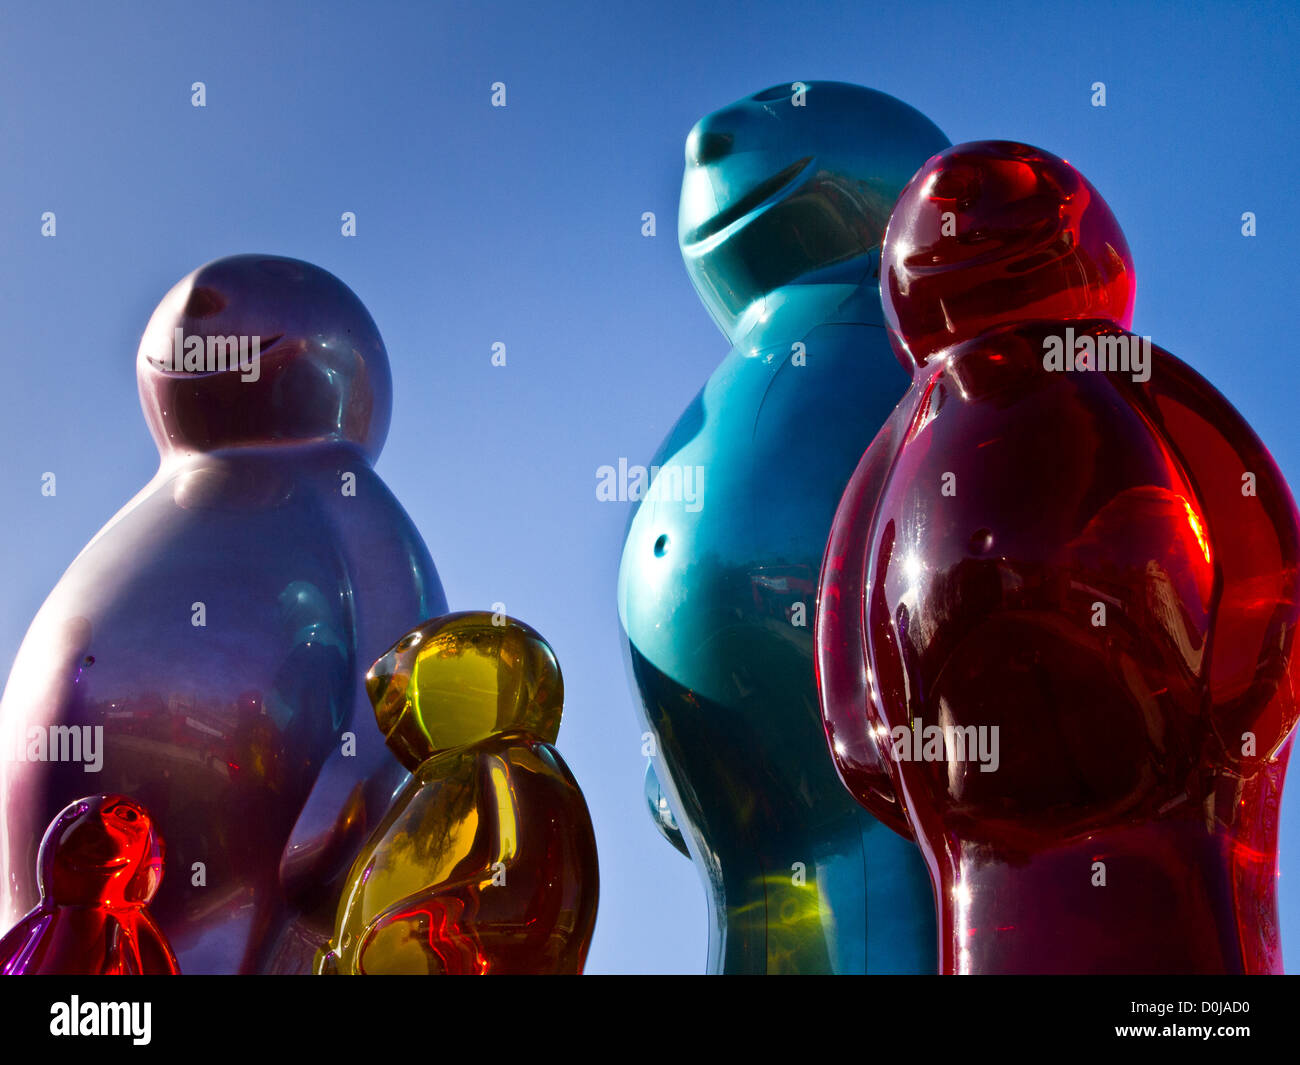 El Jelly Baby escultura creada por el artista pop italiano Mauro Perucchetti. Foto de stock